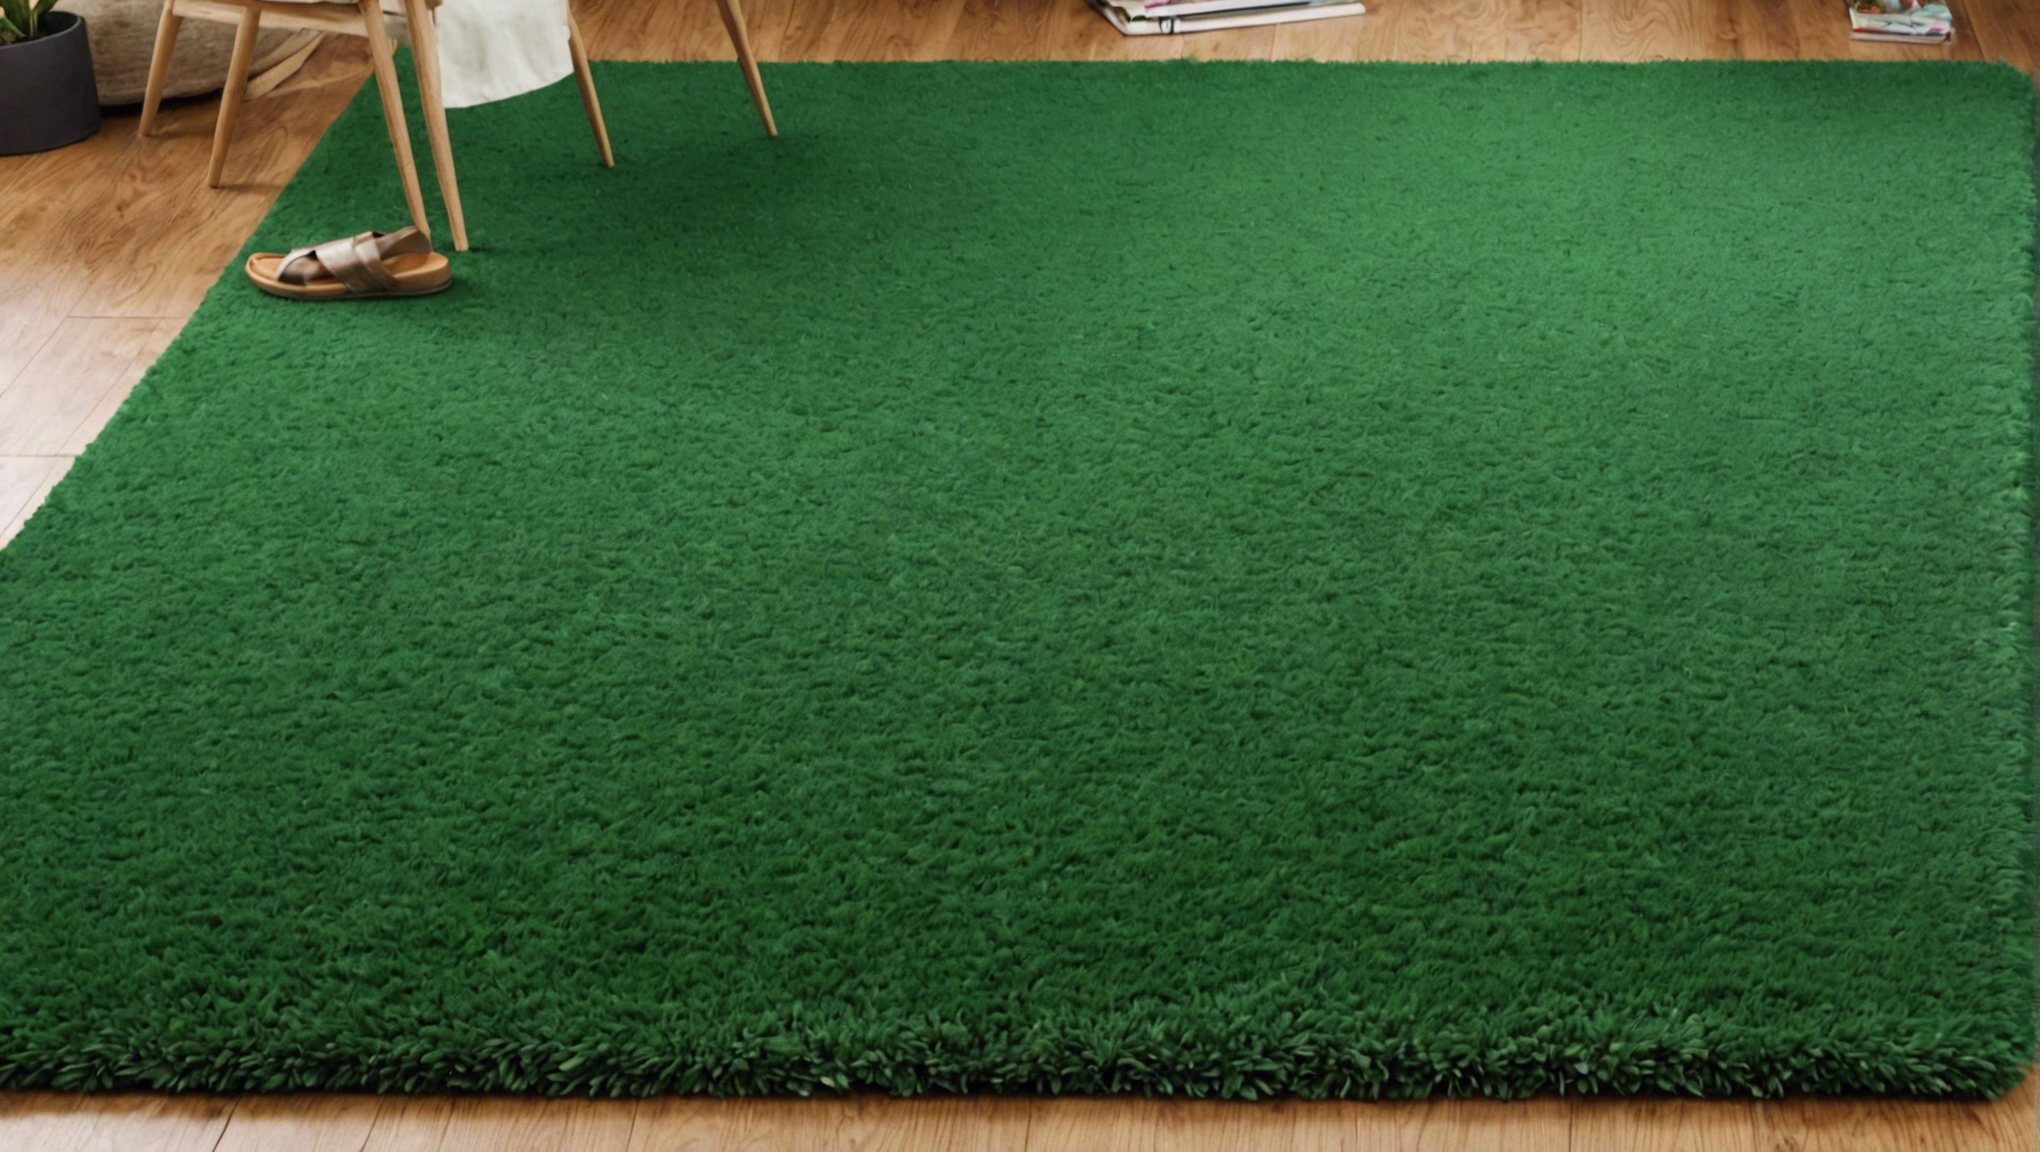 découvrez comment transformer efficacement une friche en un magnifique tapis vert luxuriant grâce à nos conseils et astuces pratiques.